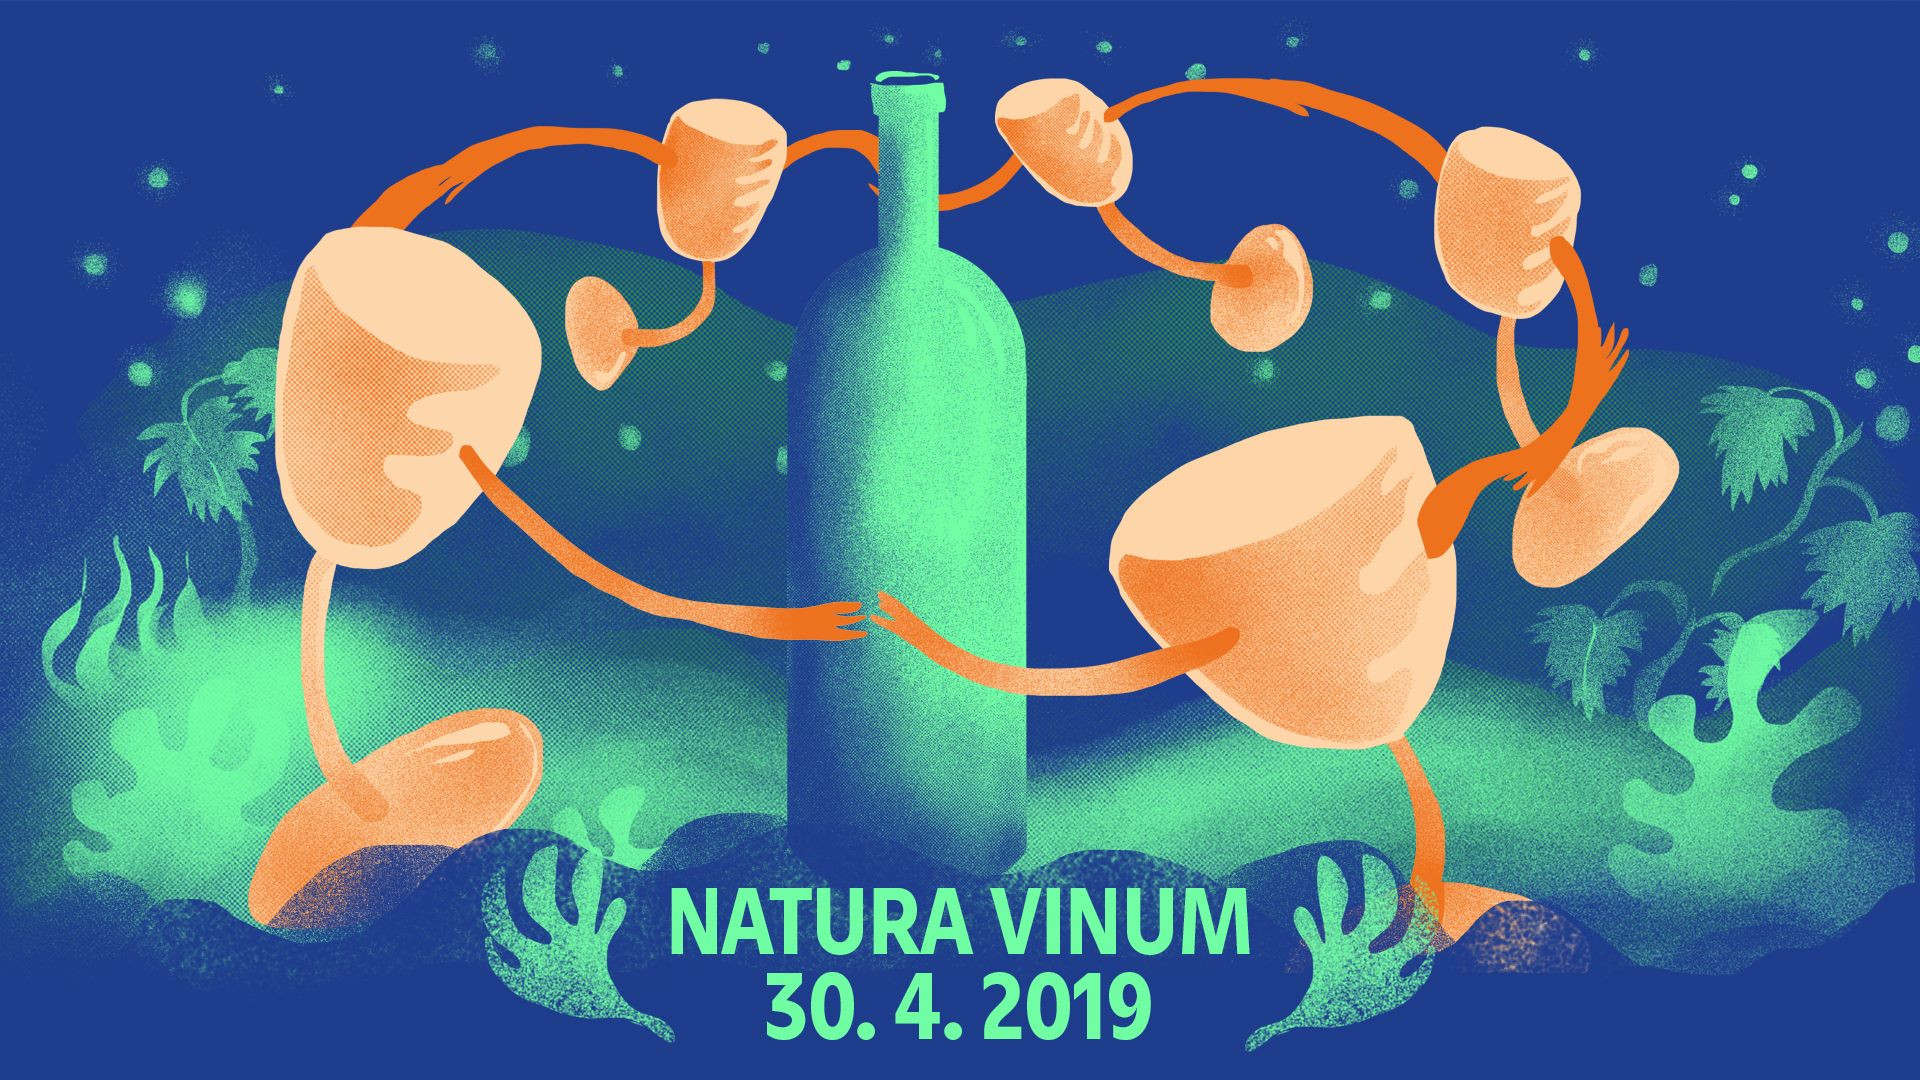 Natura Vinum 2019 (30.4.2019)